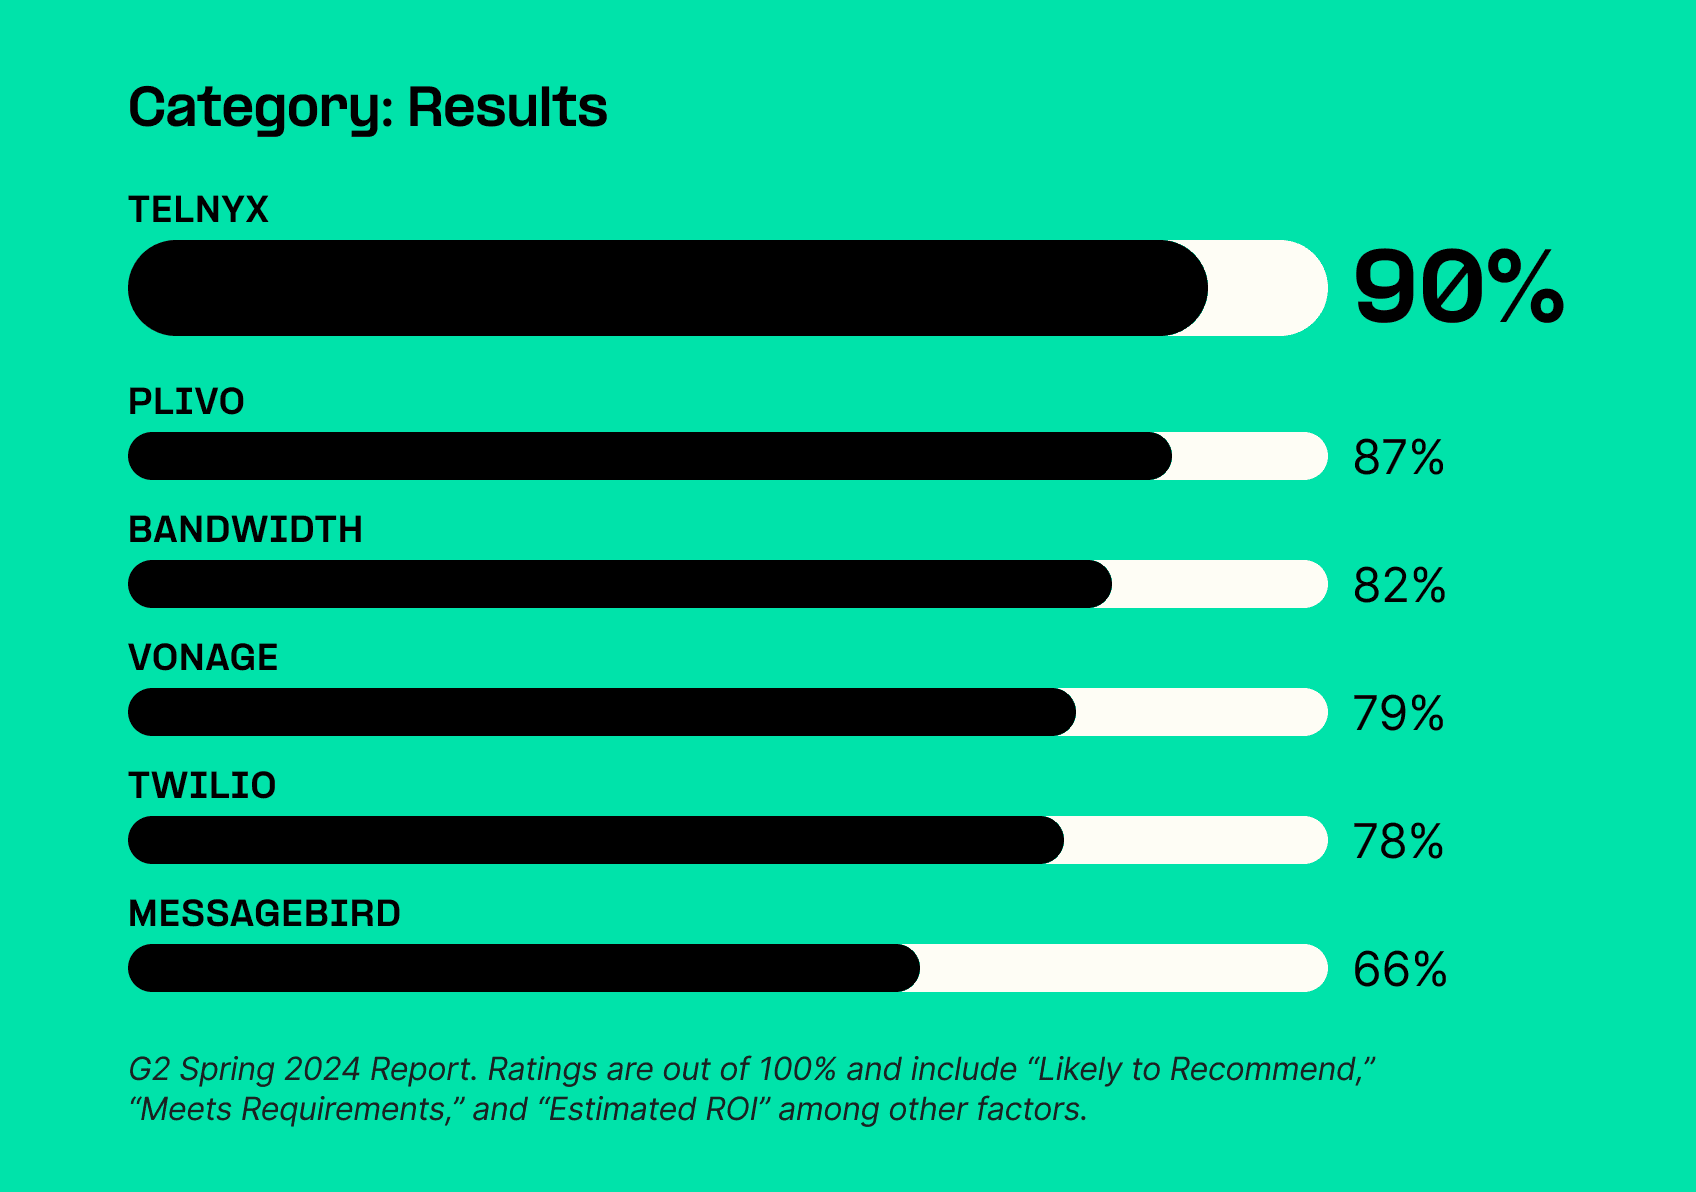 Telnyx 90%
Plivo 87%
Bandwidth 82%
Vonage 79%
Twilio 78%
MessageBird 66%